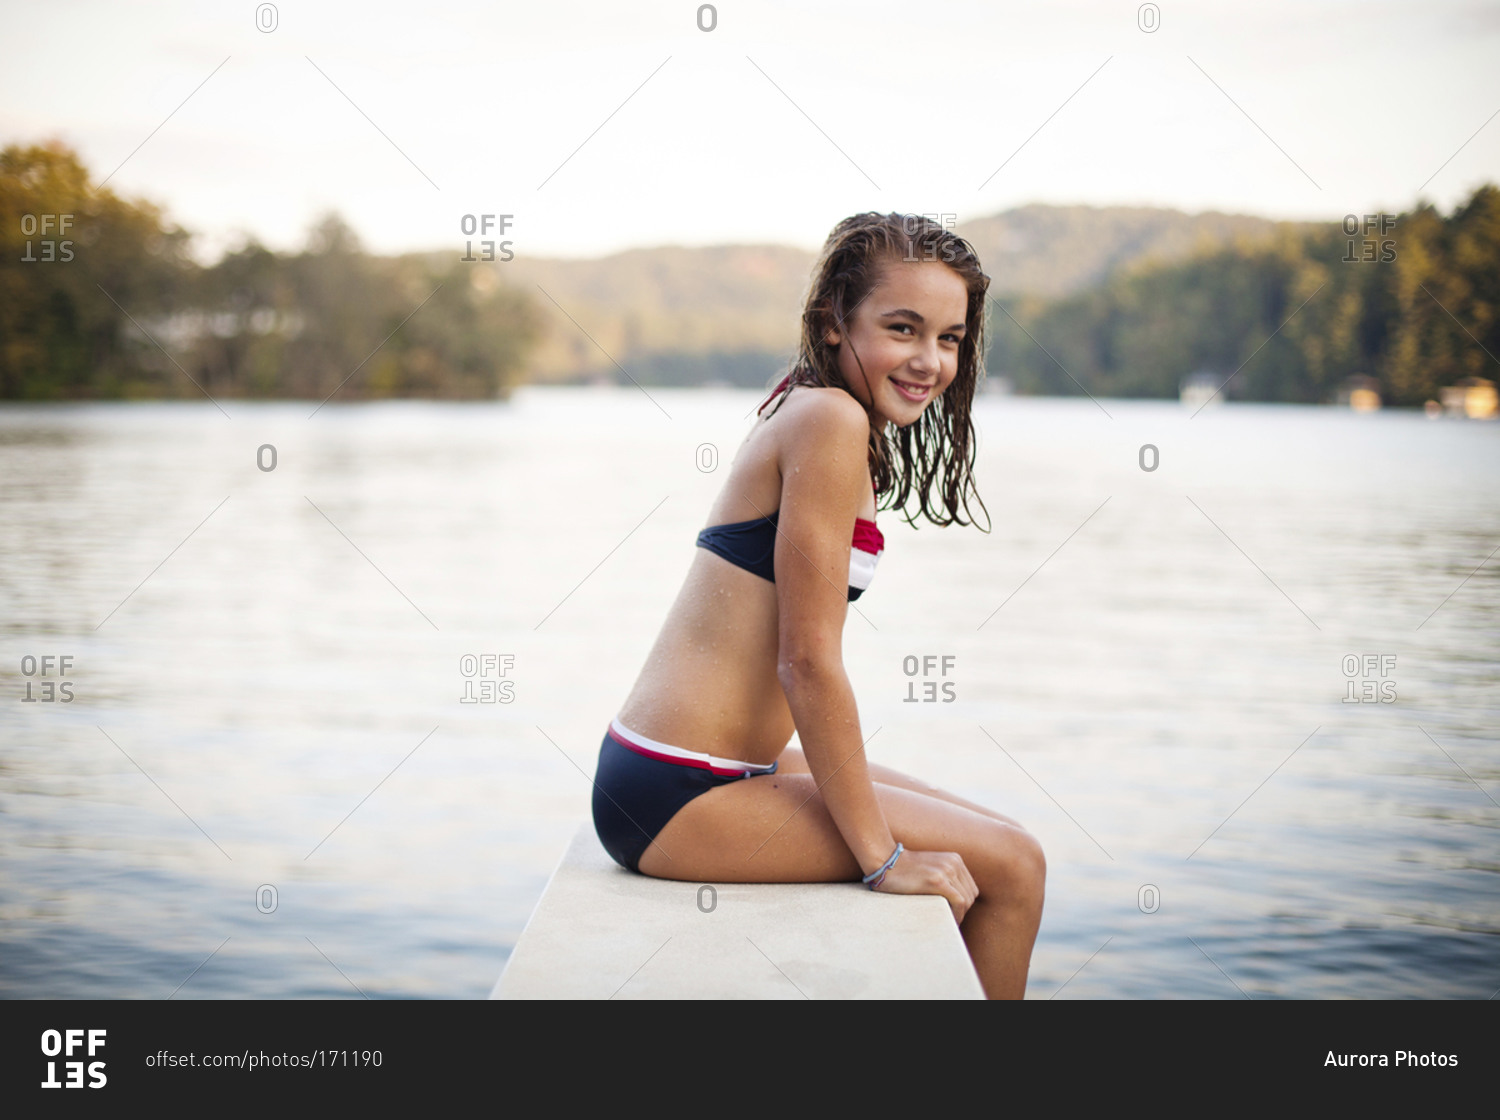 pics girls at the lake